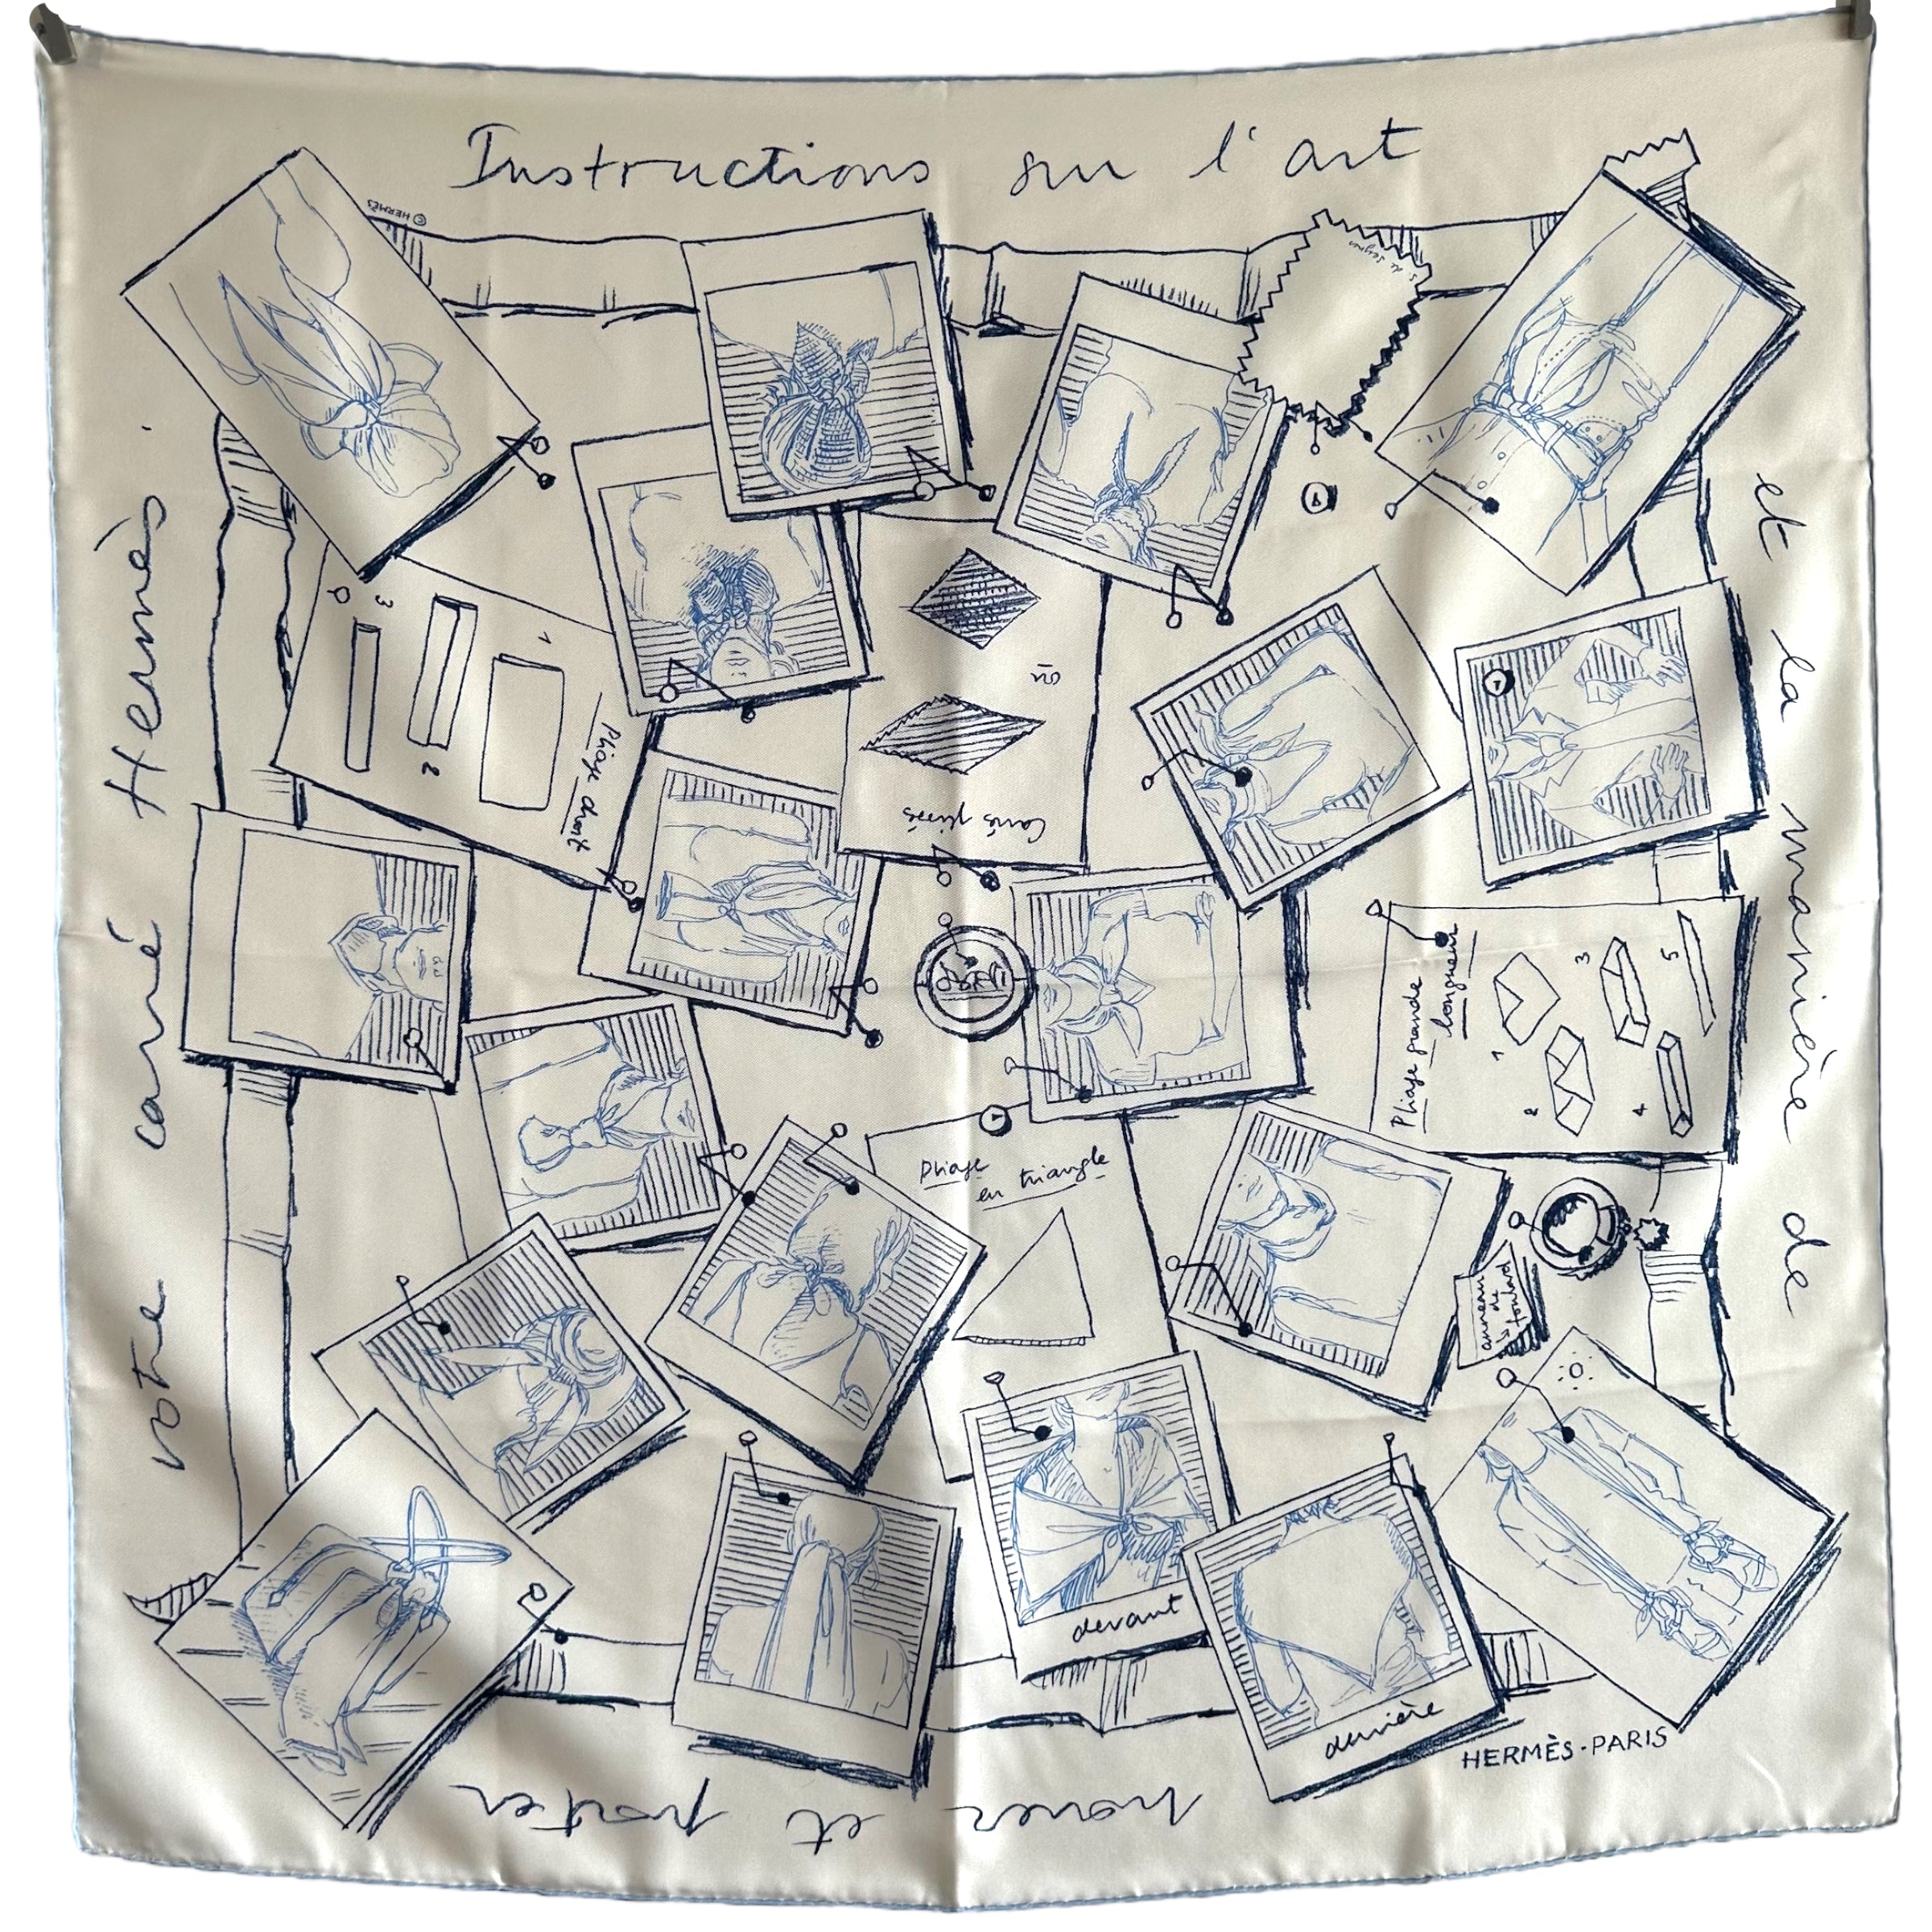 Foulard en soie 90 cm Carré Hermès intitulé Instructions sur l'art de nouer et porter votre carré Hermès dessiné par Sophie de Seynes en 100% soie de couleur bleu et blanc 